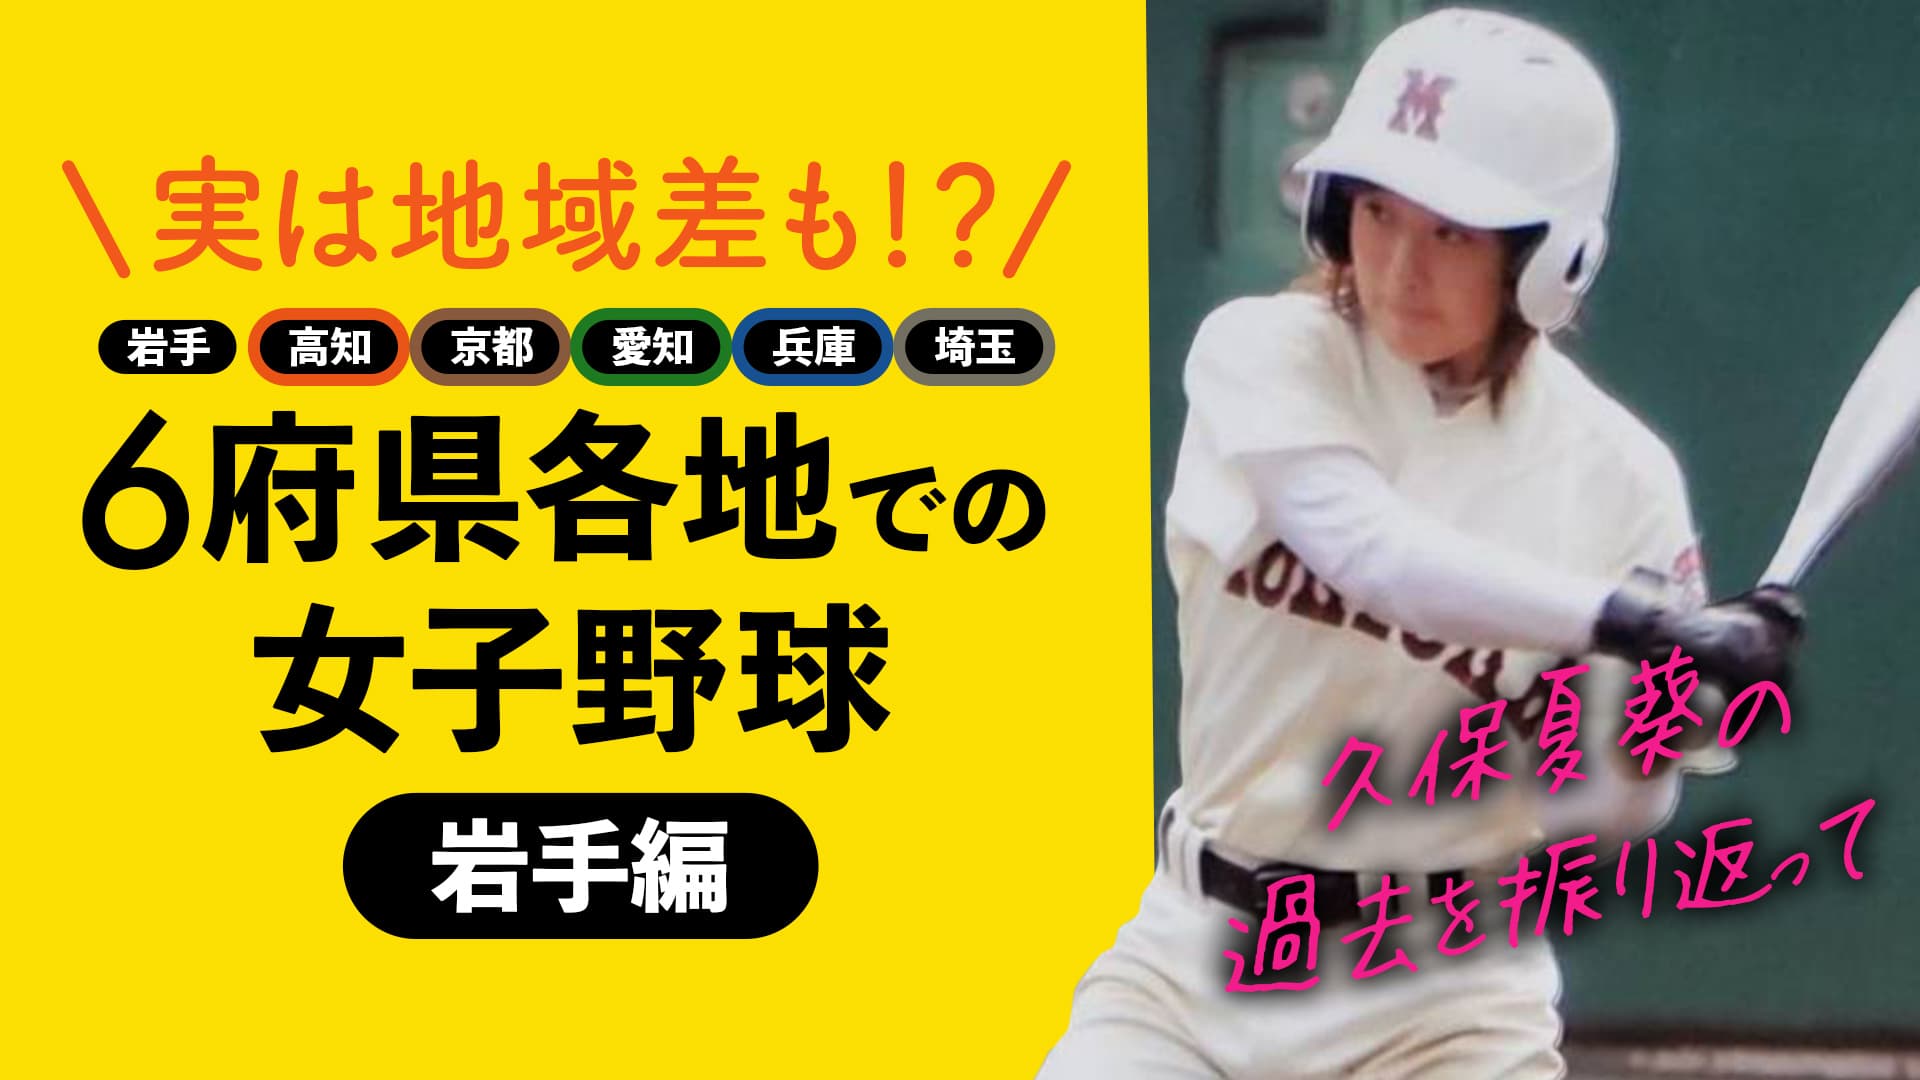 【岩手編】6府県で女子野球を経験した久保夏葵が各地で感じたこと